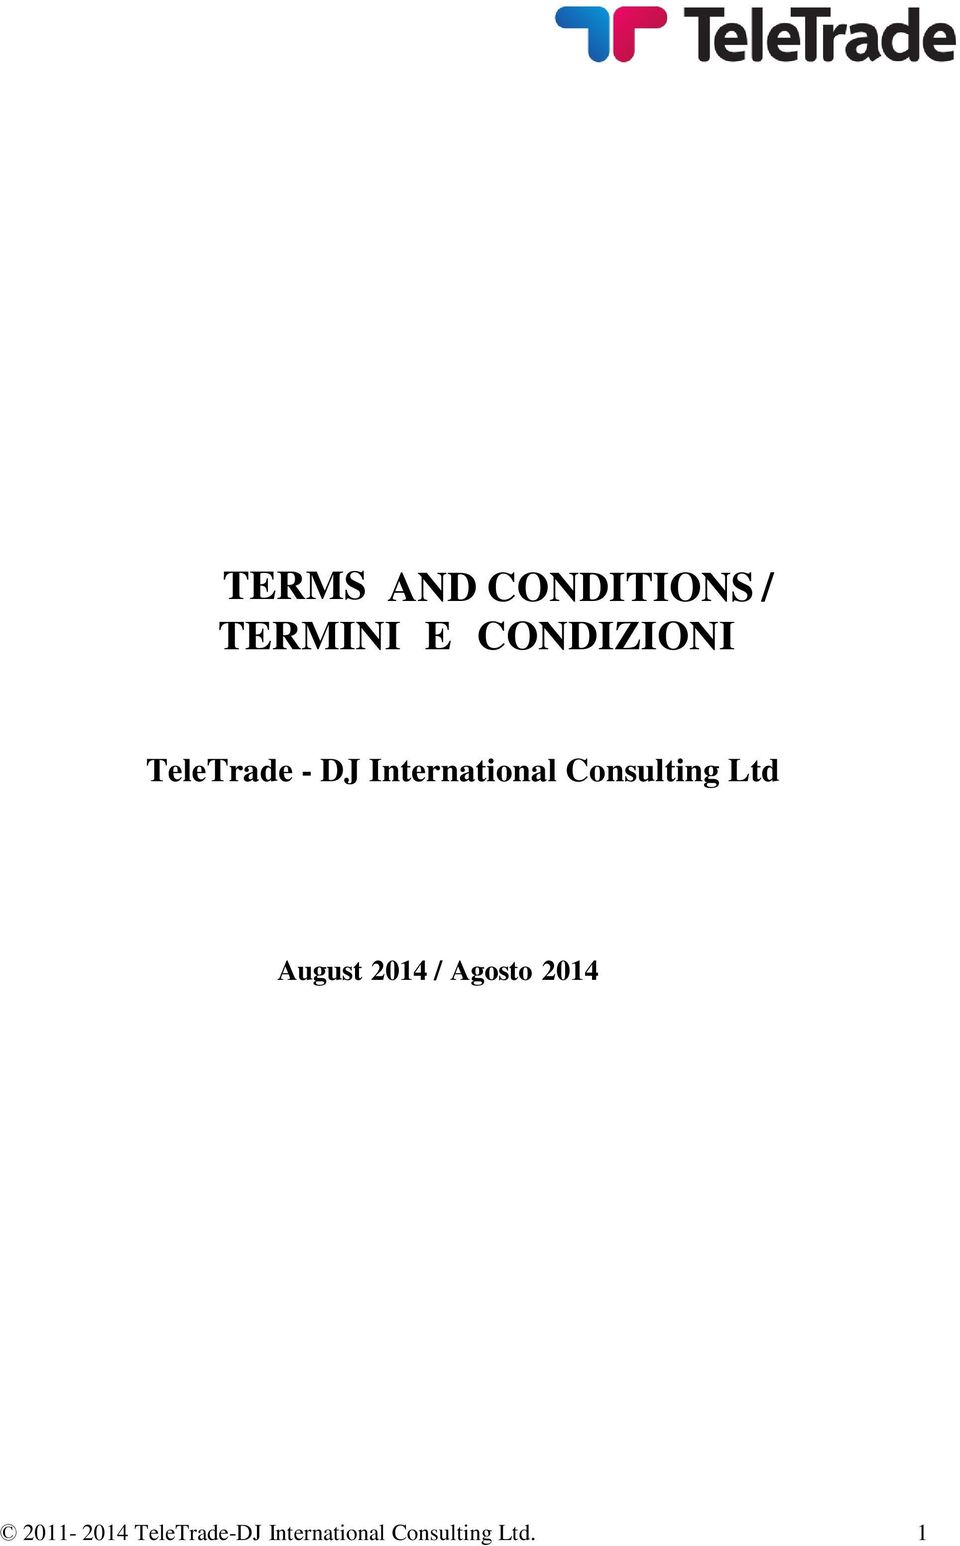 TeleTrade - DJ International